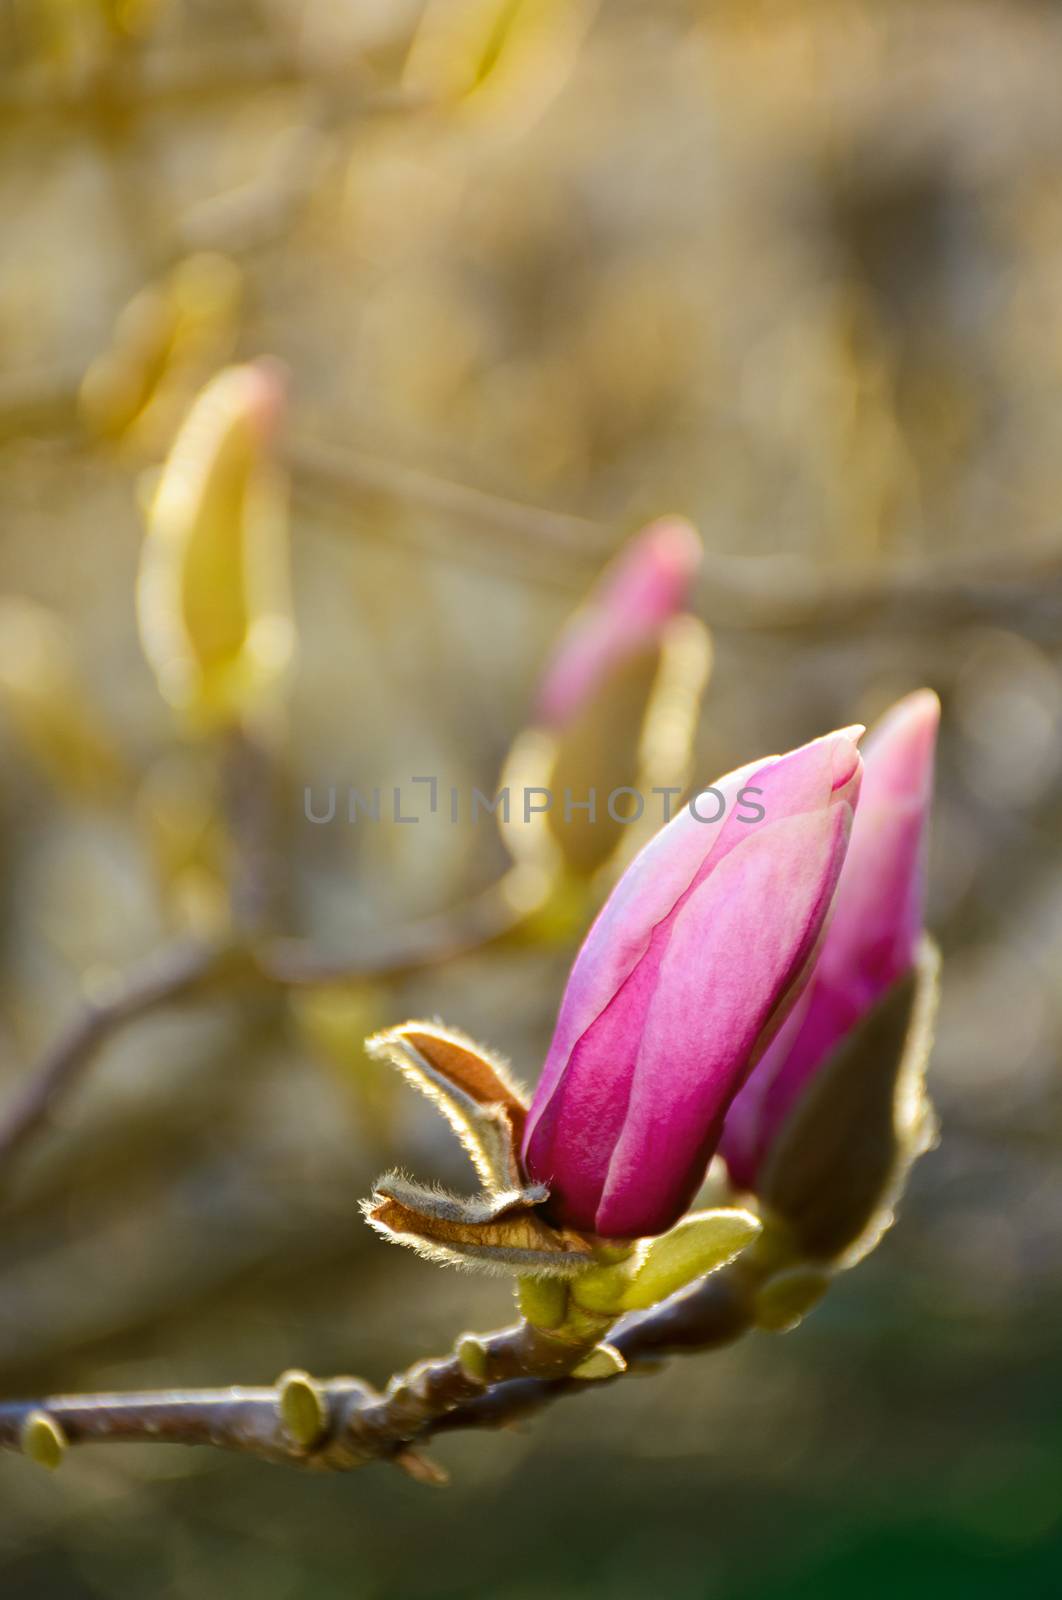 purple flowers of magnolia tree blossom by Pellinni